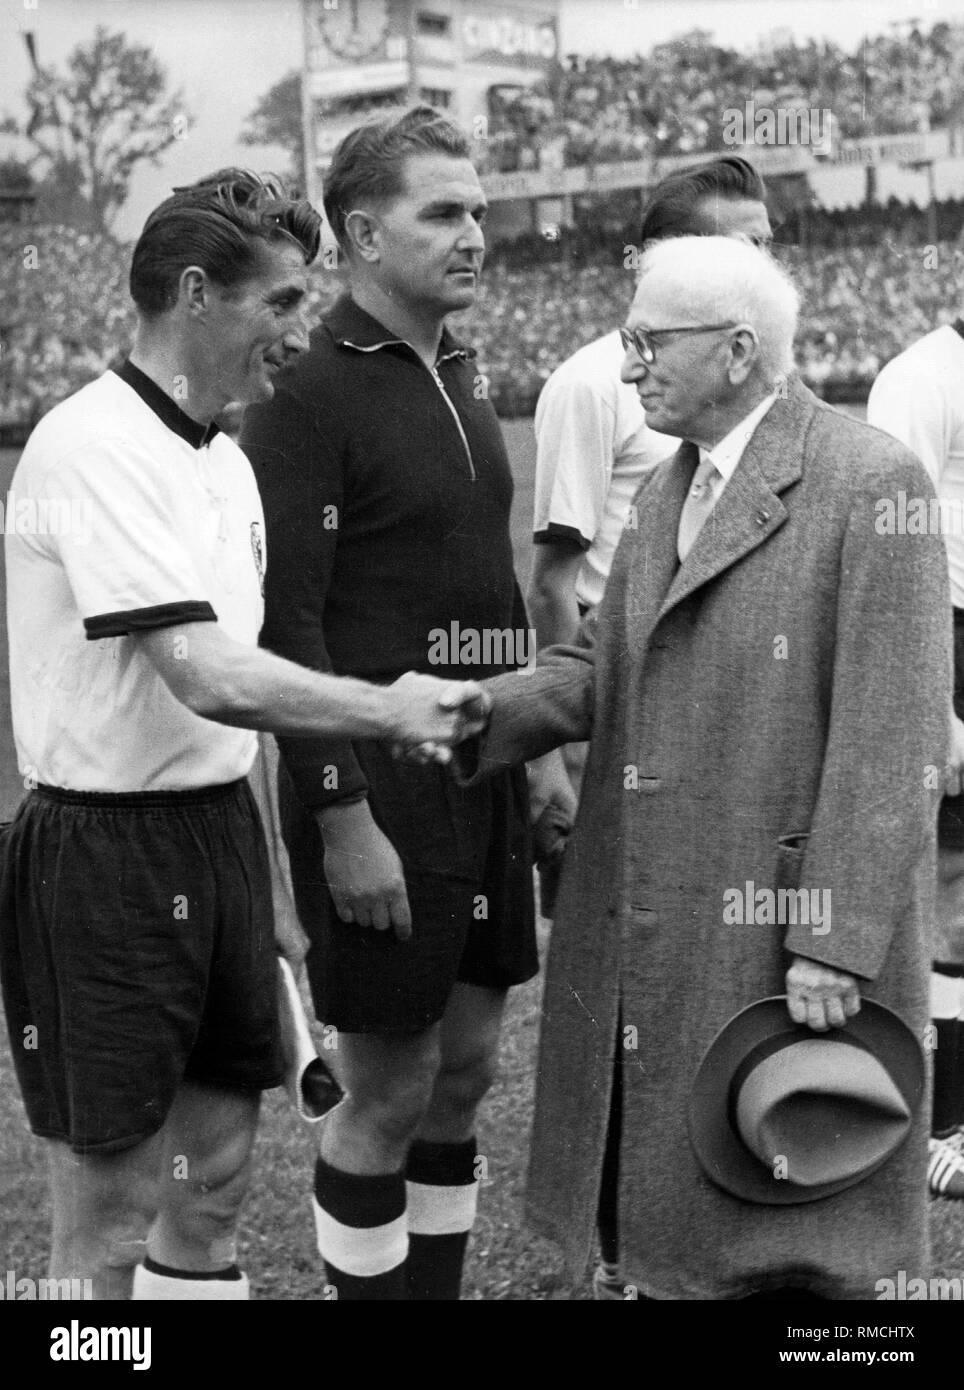 Il presidente della FIFA Jules Rimet (r) accoglie favorevolmente il capitano del team nazionale tedesco Fritz Walter prima della finale del 1954 FIFA World Cup. Foto Stock